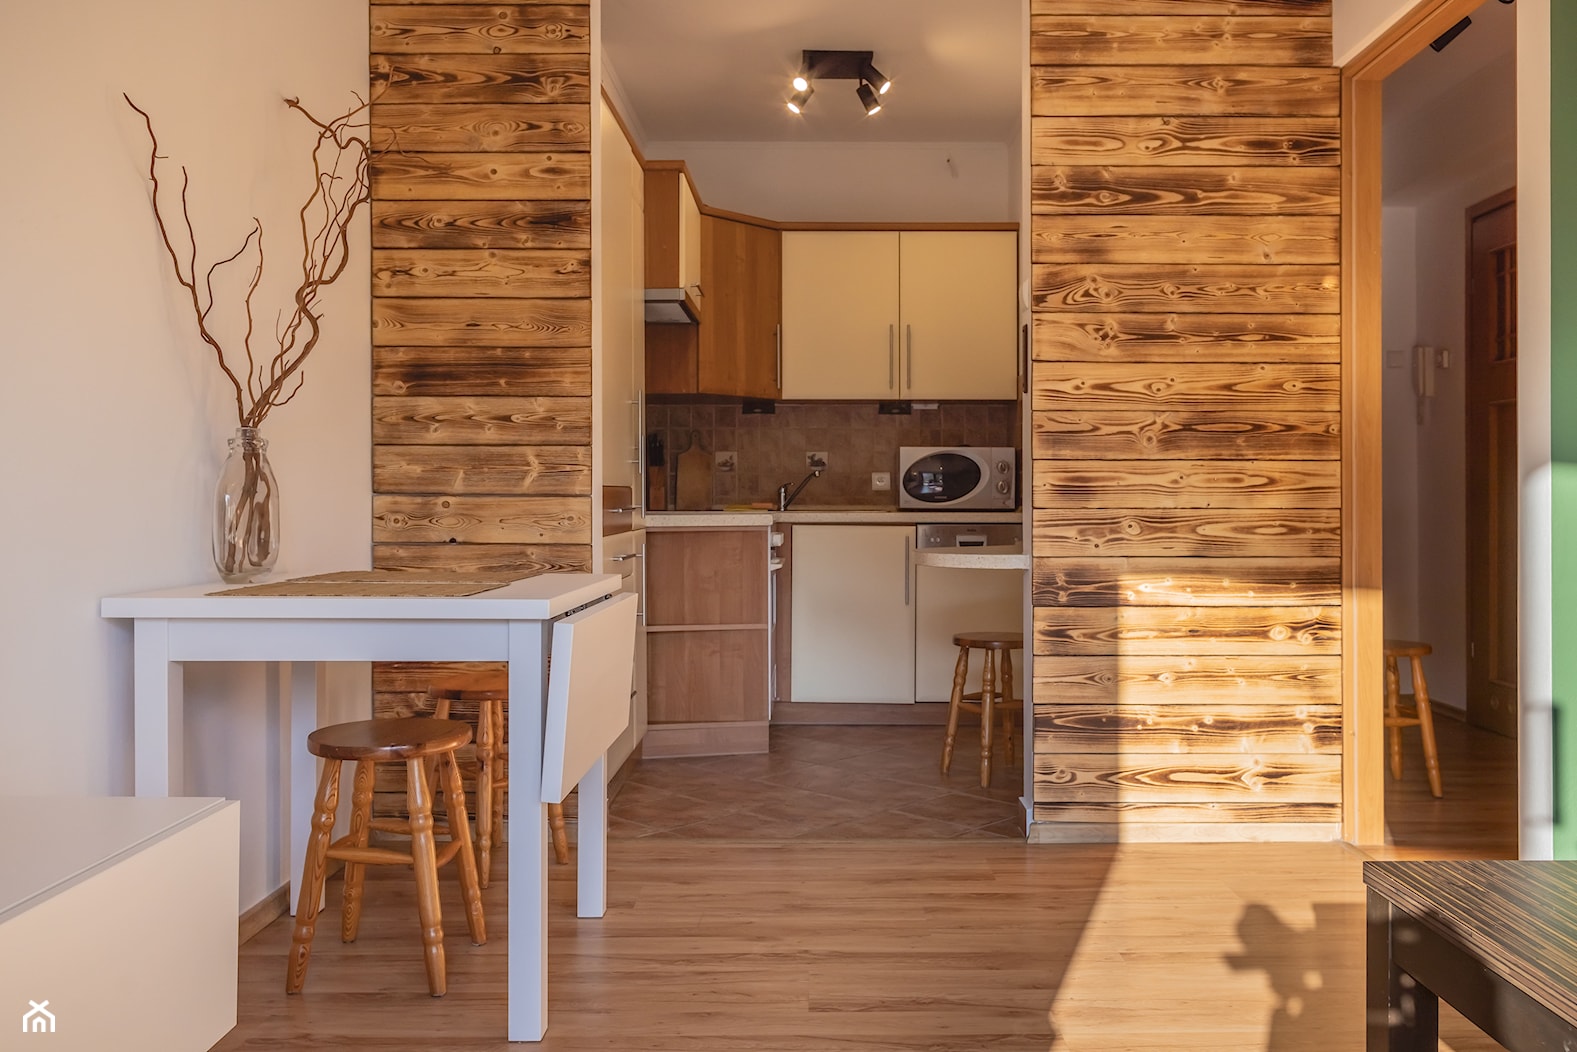 Salon z widokiem na kuchnię - mały, zielona, drewniane dodatki, deska opalana, drewno, dwa łóżka - zdjęcie od M8 Studio - Paula Tylek - Homebook